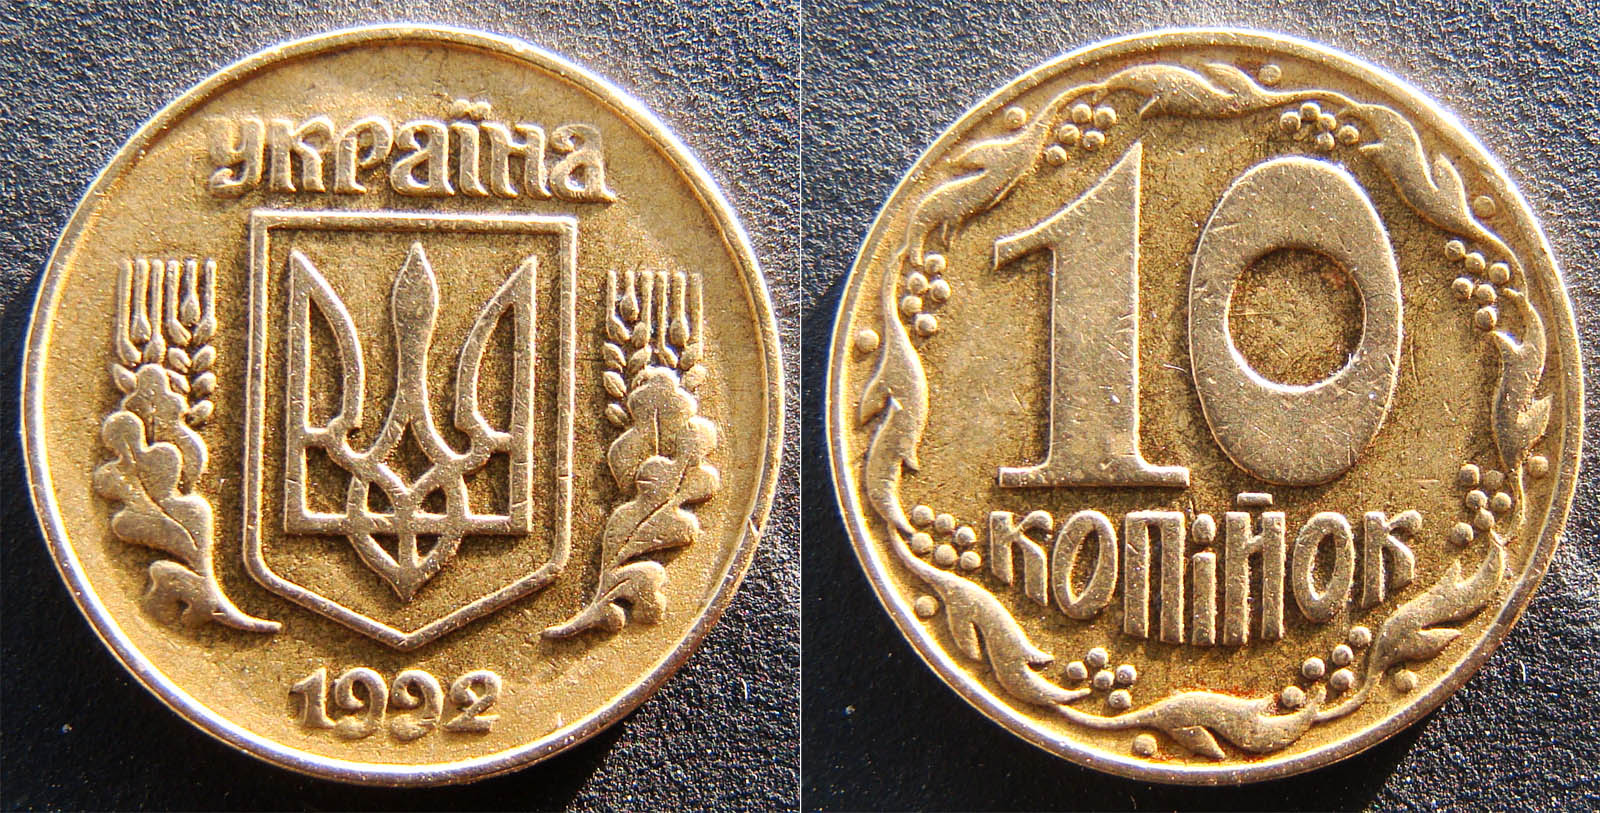 10 копеек 1992г. Примерная стоимость 2500-5000грн. - Дорогие монеты Украины